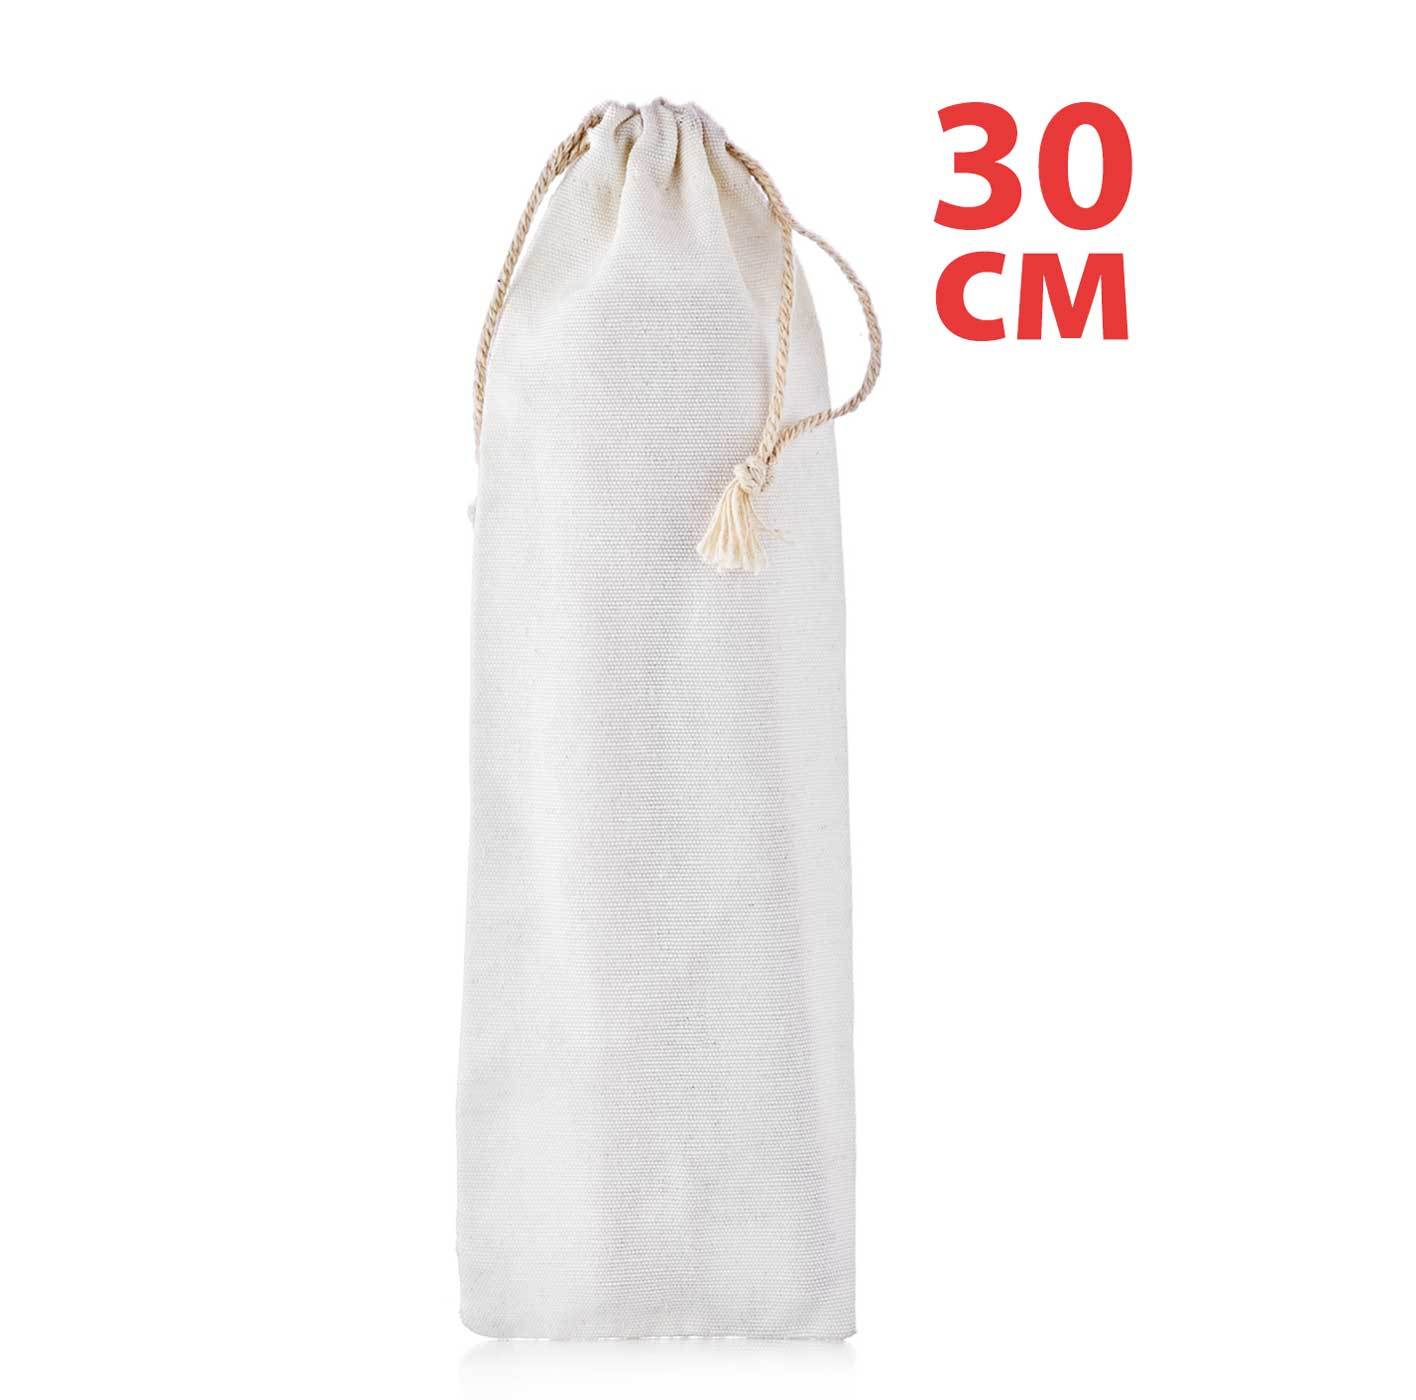 Аксессуары Тканевый мешочек для хранения трубочек белого цвета со шнурком для завязывания, 30 см meshochek-dlia-trubochek-teastar-Sg.jpg